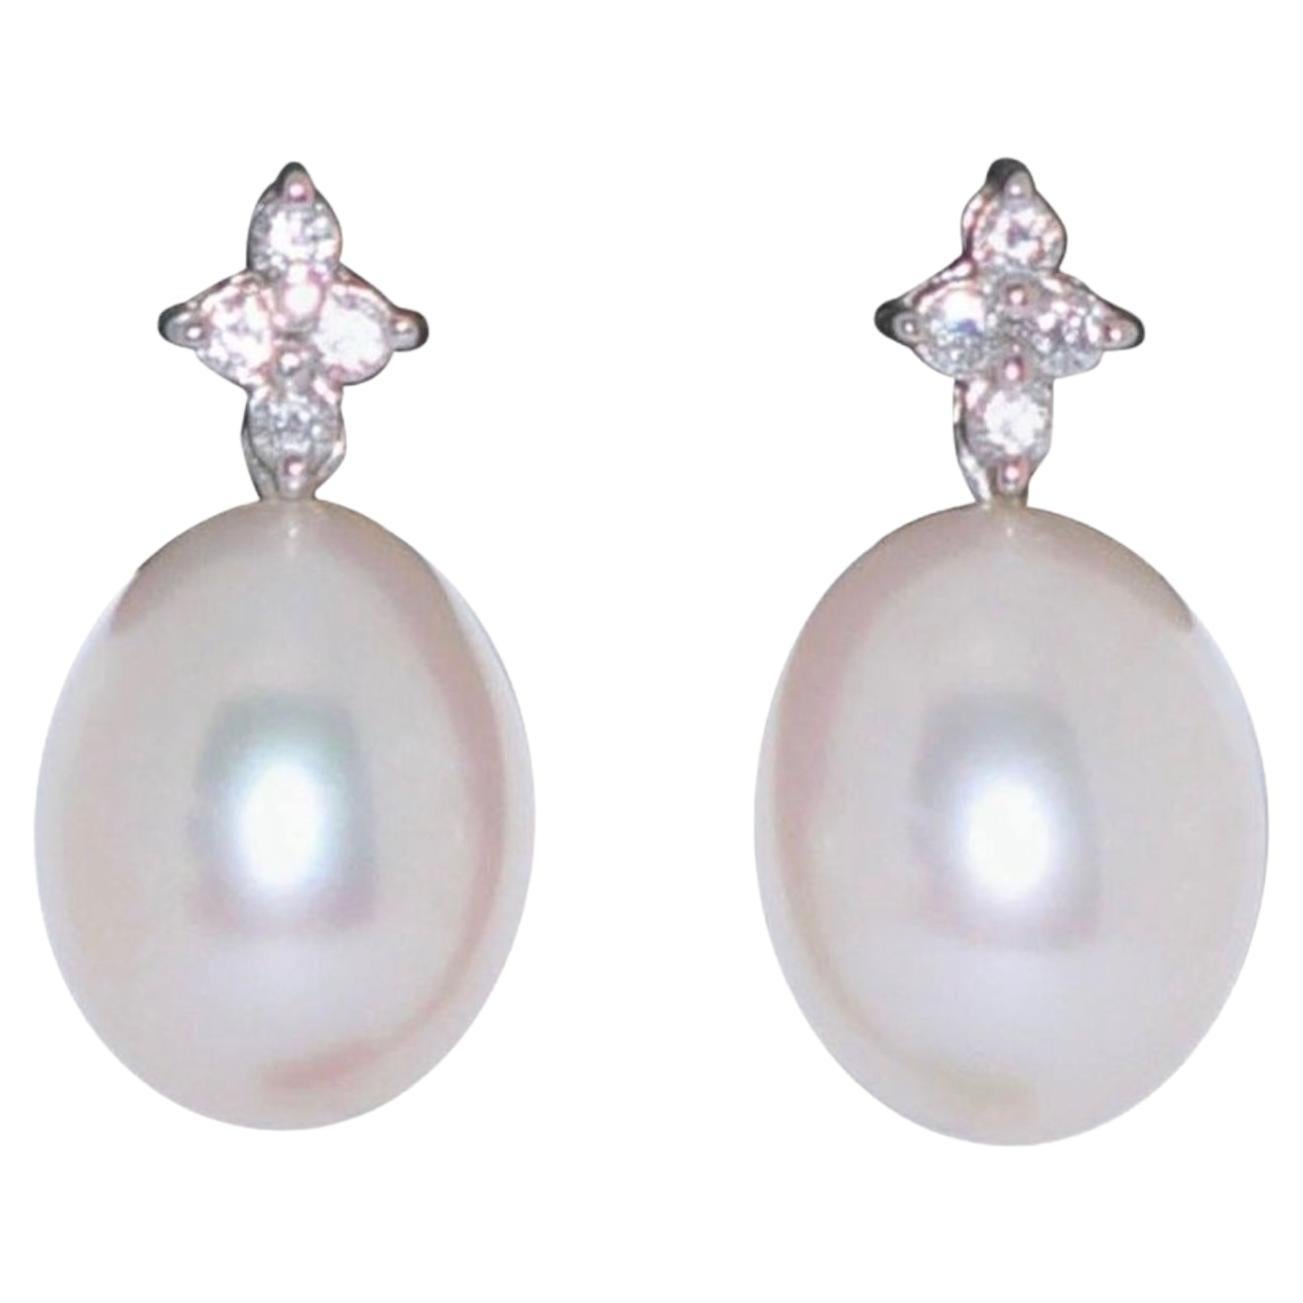 Pendentifs Boucles d'oreilles Mère de Perles Diamants Or Blanc